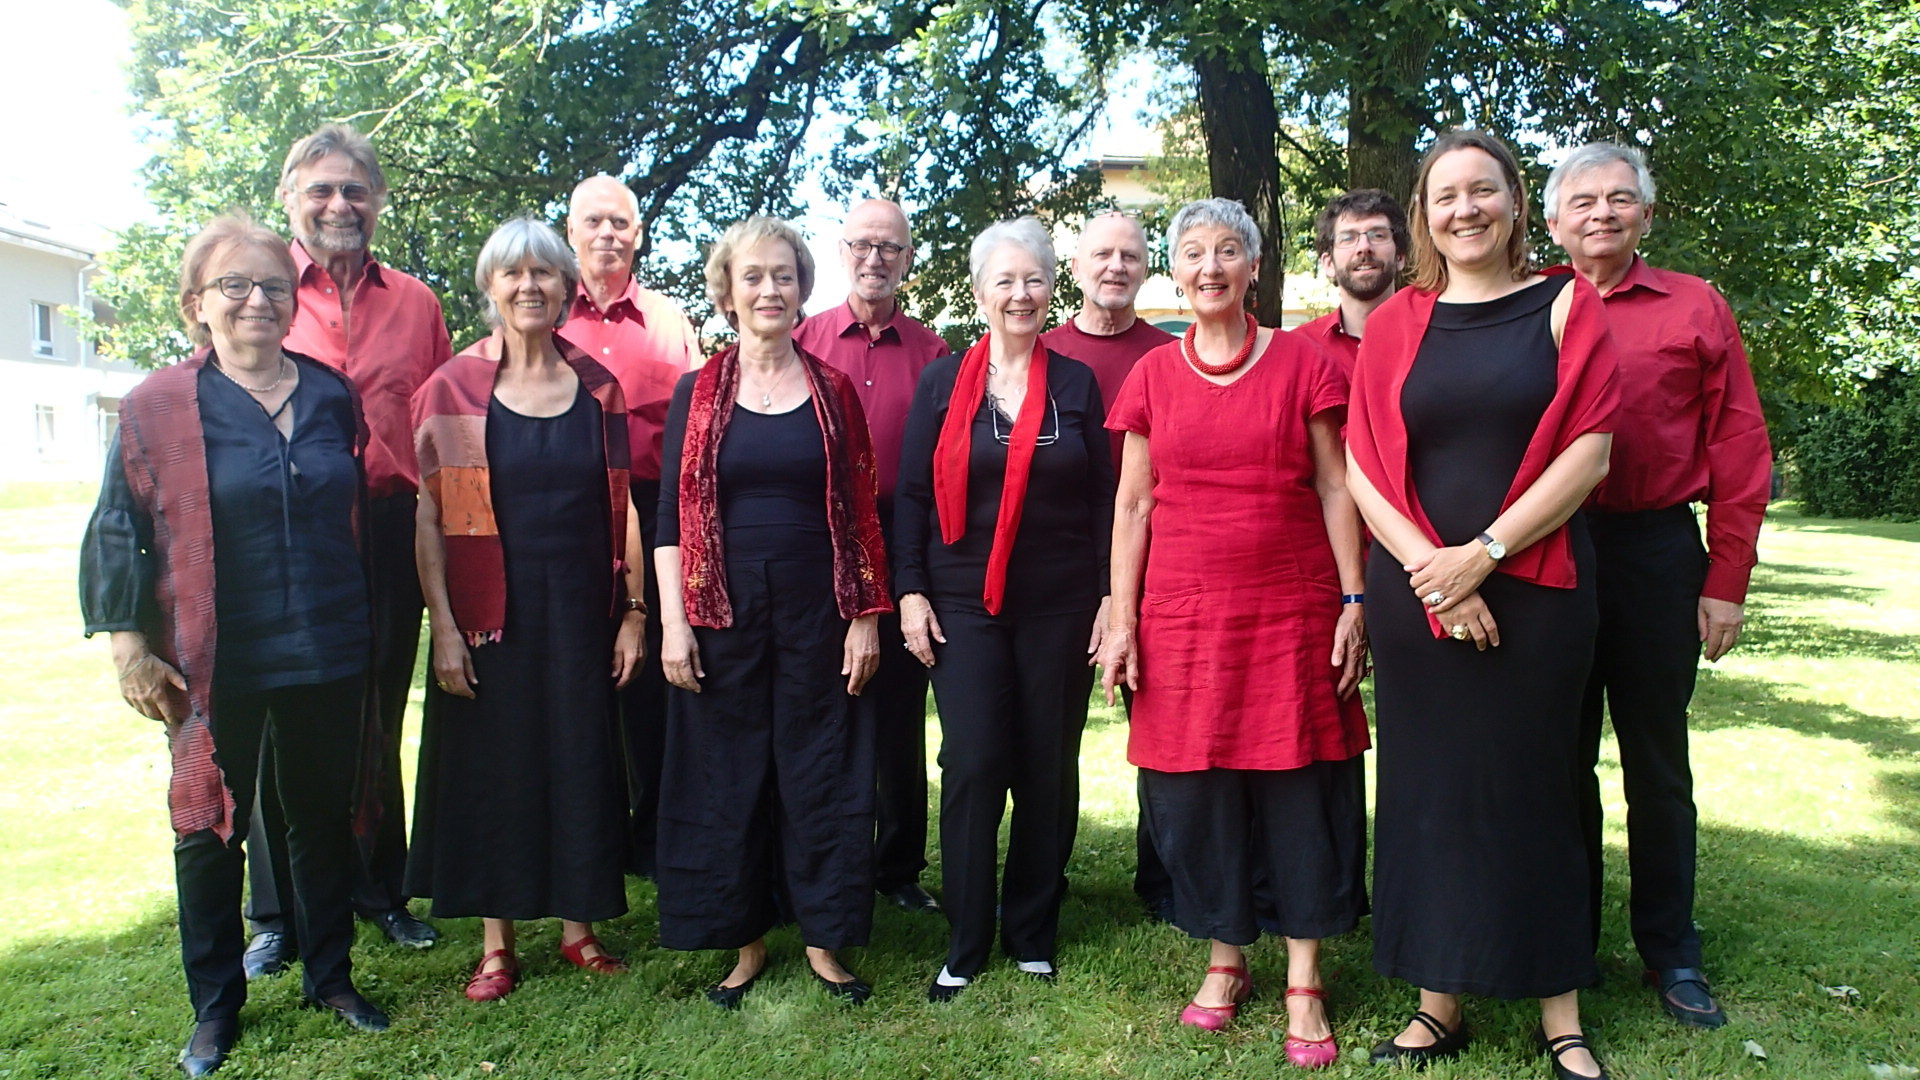 L'ensemble vocal Quilisma, basé à Borex, réunit douze chanteurs de l'arc lémanique.